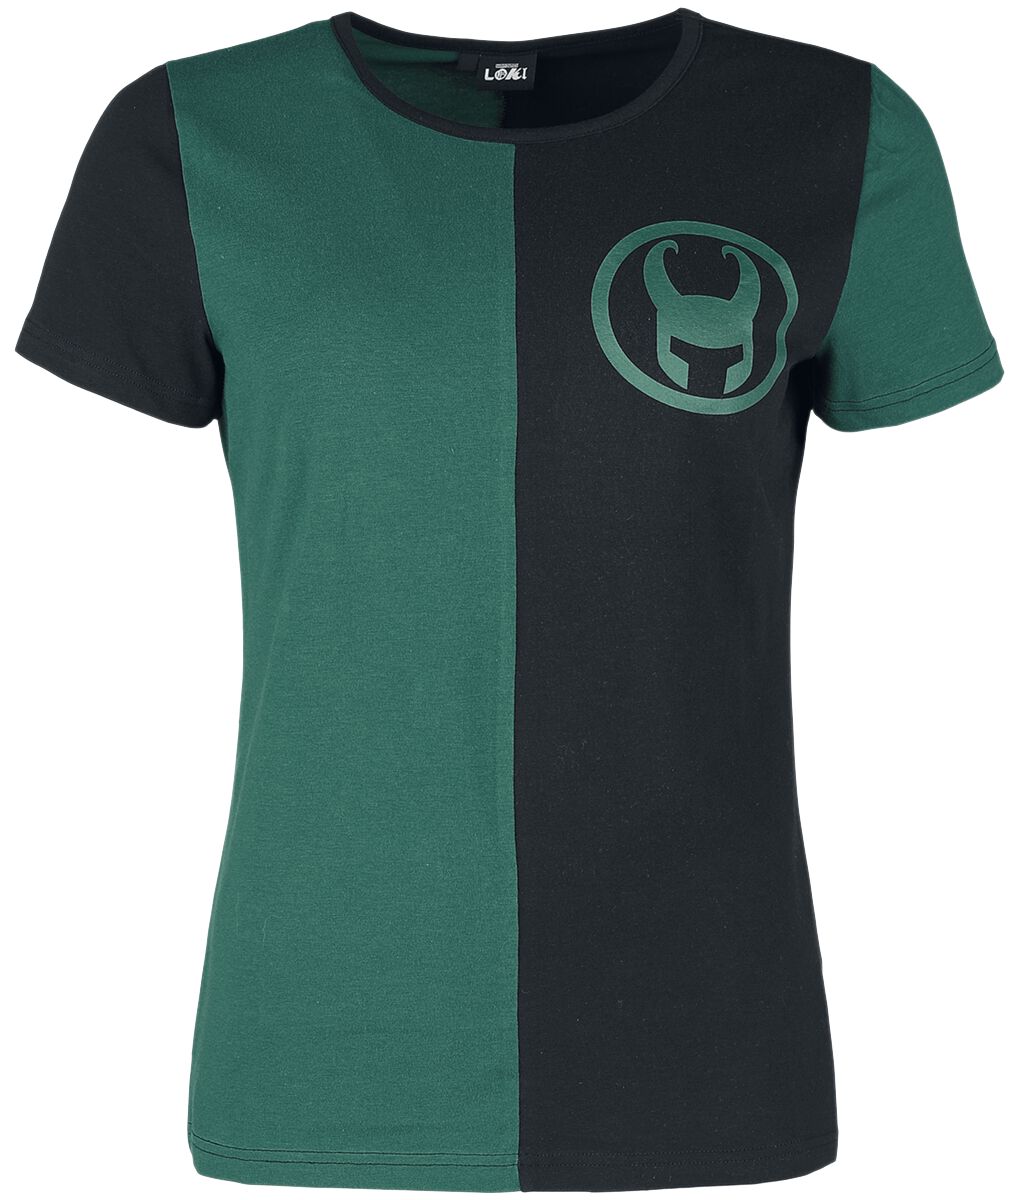 T-Shirt Manches courtes de Loki - Logo - S à XXL - pour Femme - vert/noir